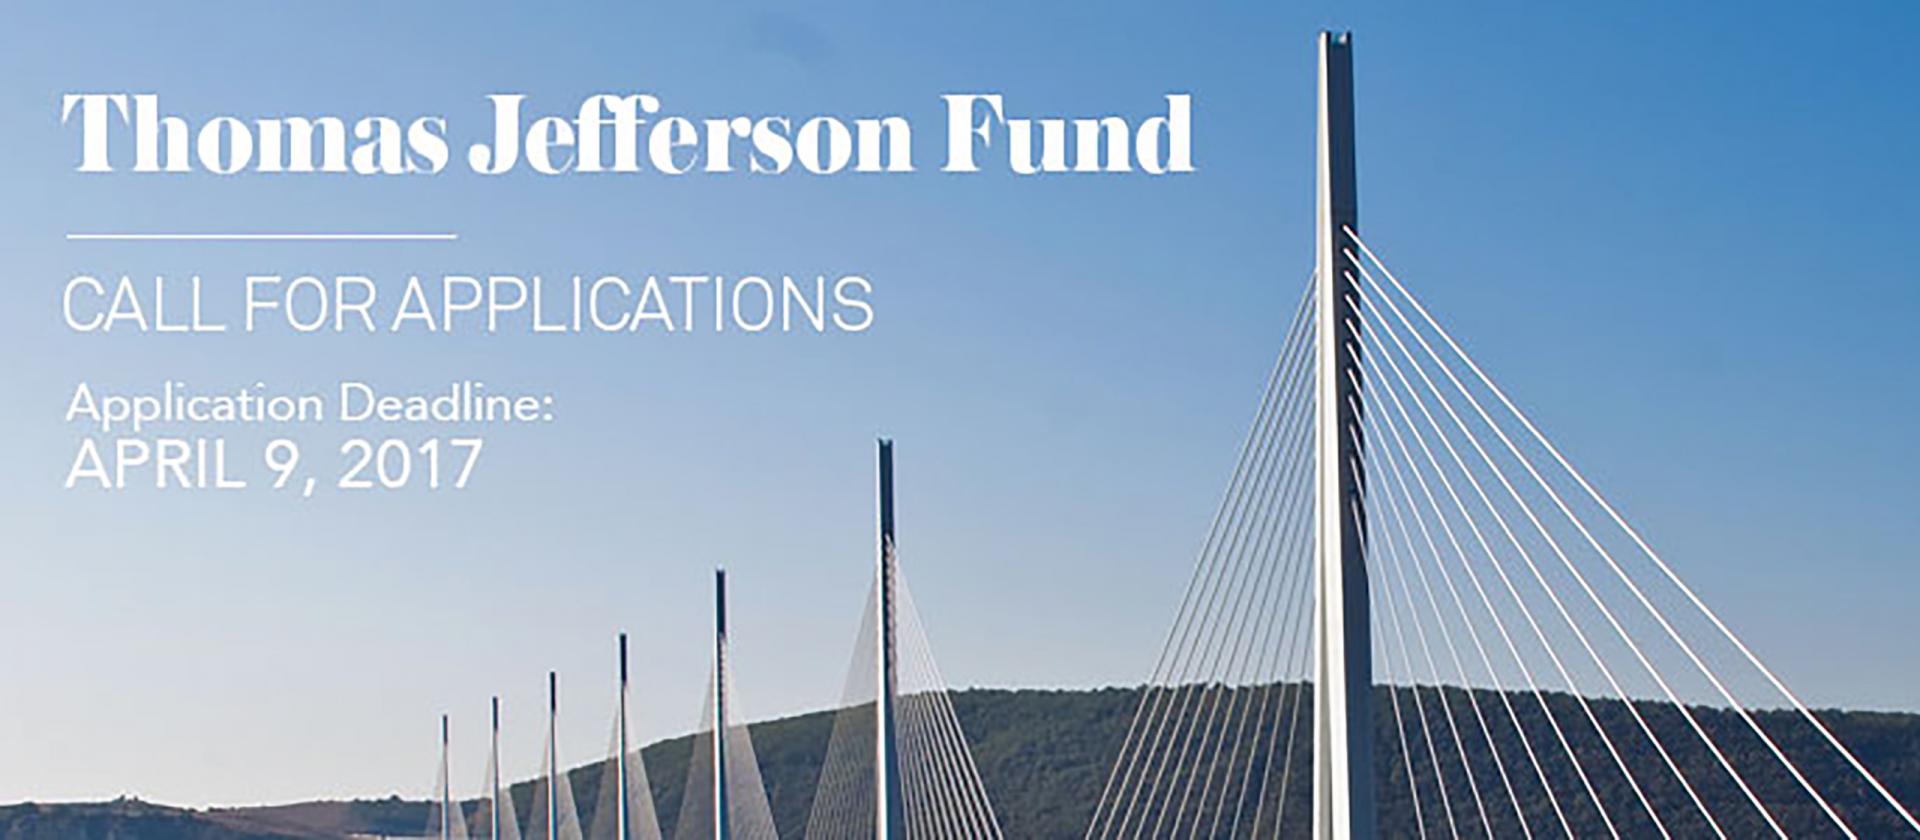 Thomas Jefferson Fund